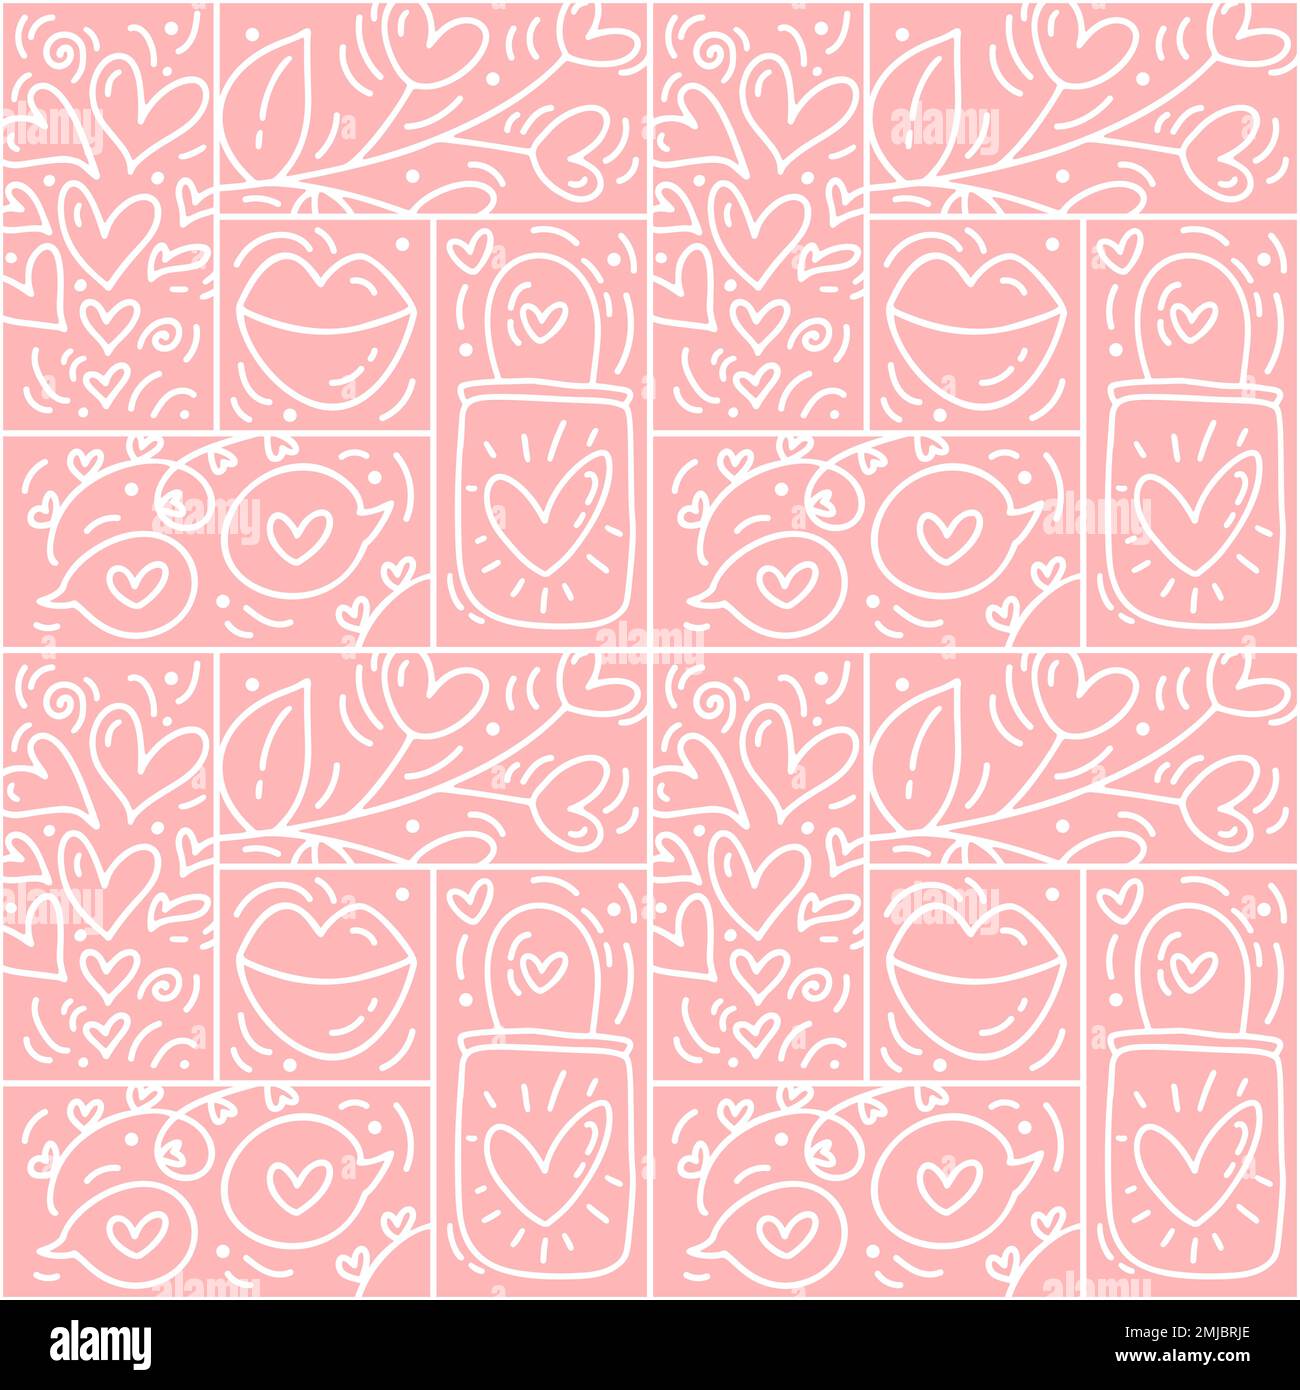 Vektor des Valentinstag-Logos Nahtloses Muster Liebe, Lippen, Herz und Wolken auf pinkfarbenem Hintergrund. Handgezeichneter Monolin-Konstrukteur für eine romantische Grußkarte Stock Vektor